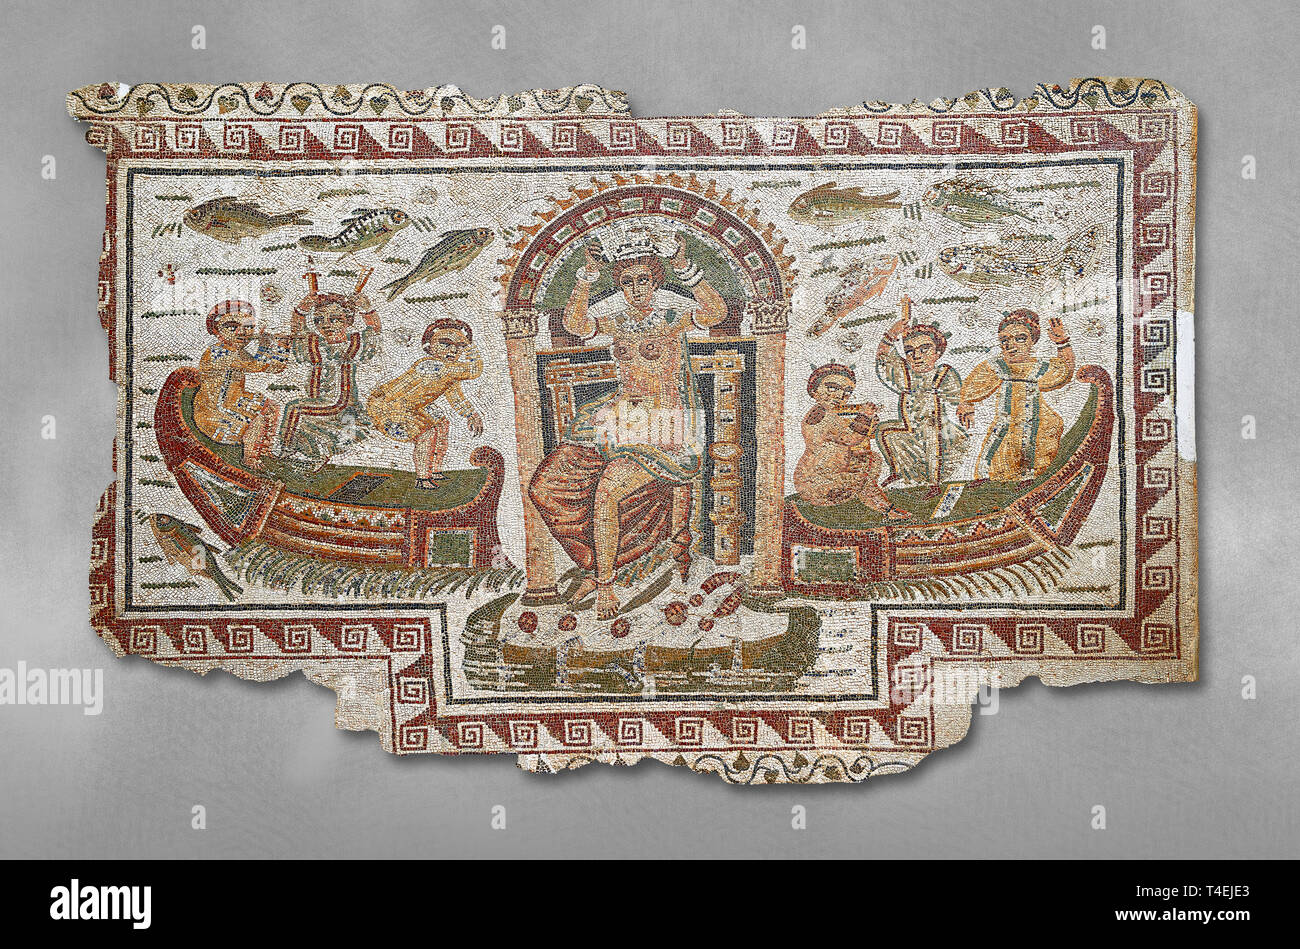 Fine del IV secolo d.c. mosaico romano pannello di Venere, Afrodite, su una barca a coronamento di se stessa accompagnata da sei nani. Da Cathage, Tunisia. Il Bardo M Foto Stock